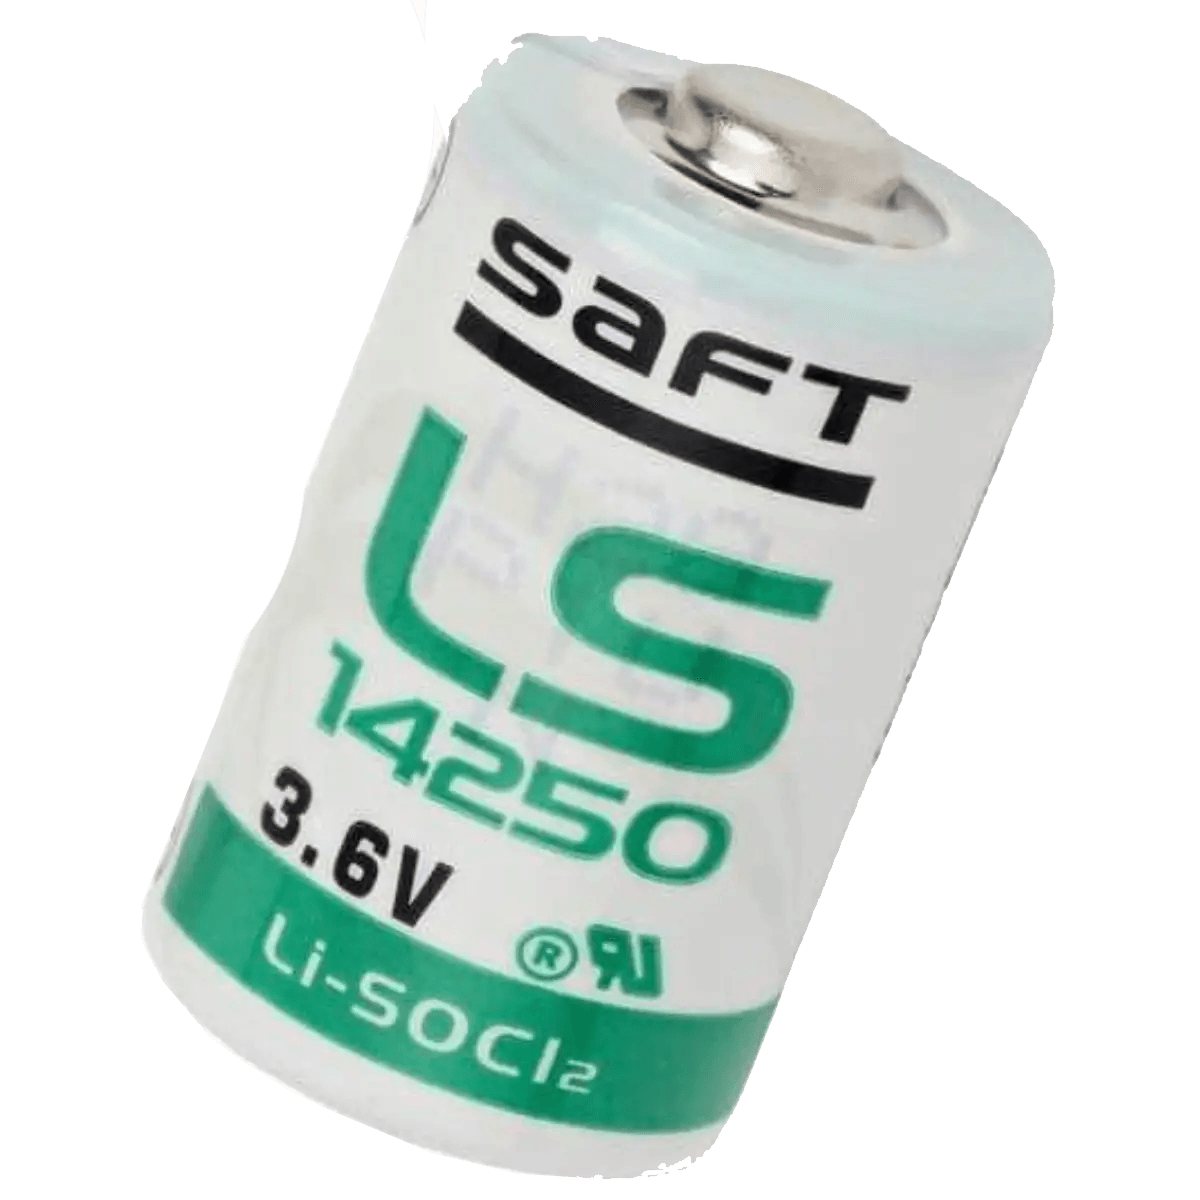 Pile spéciale 1/2 LR6 (AA) lithium Saft LS14250CLG cosses à souder